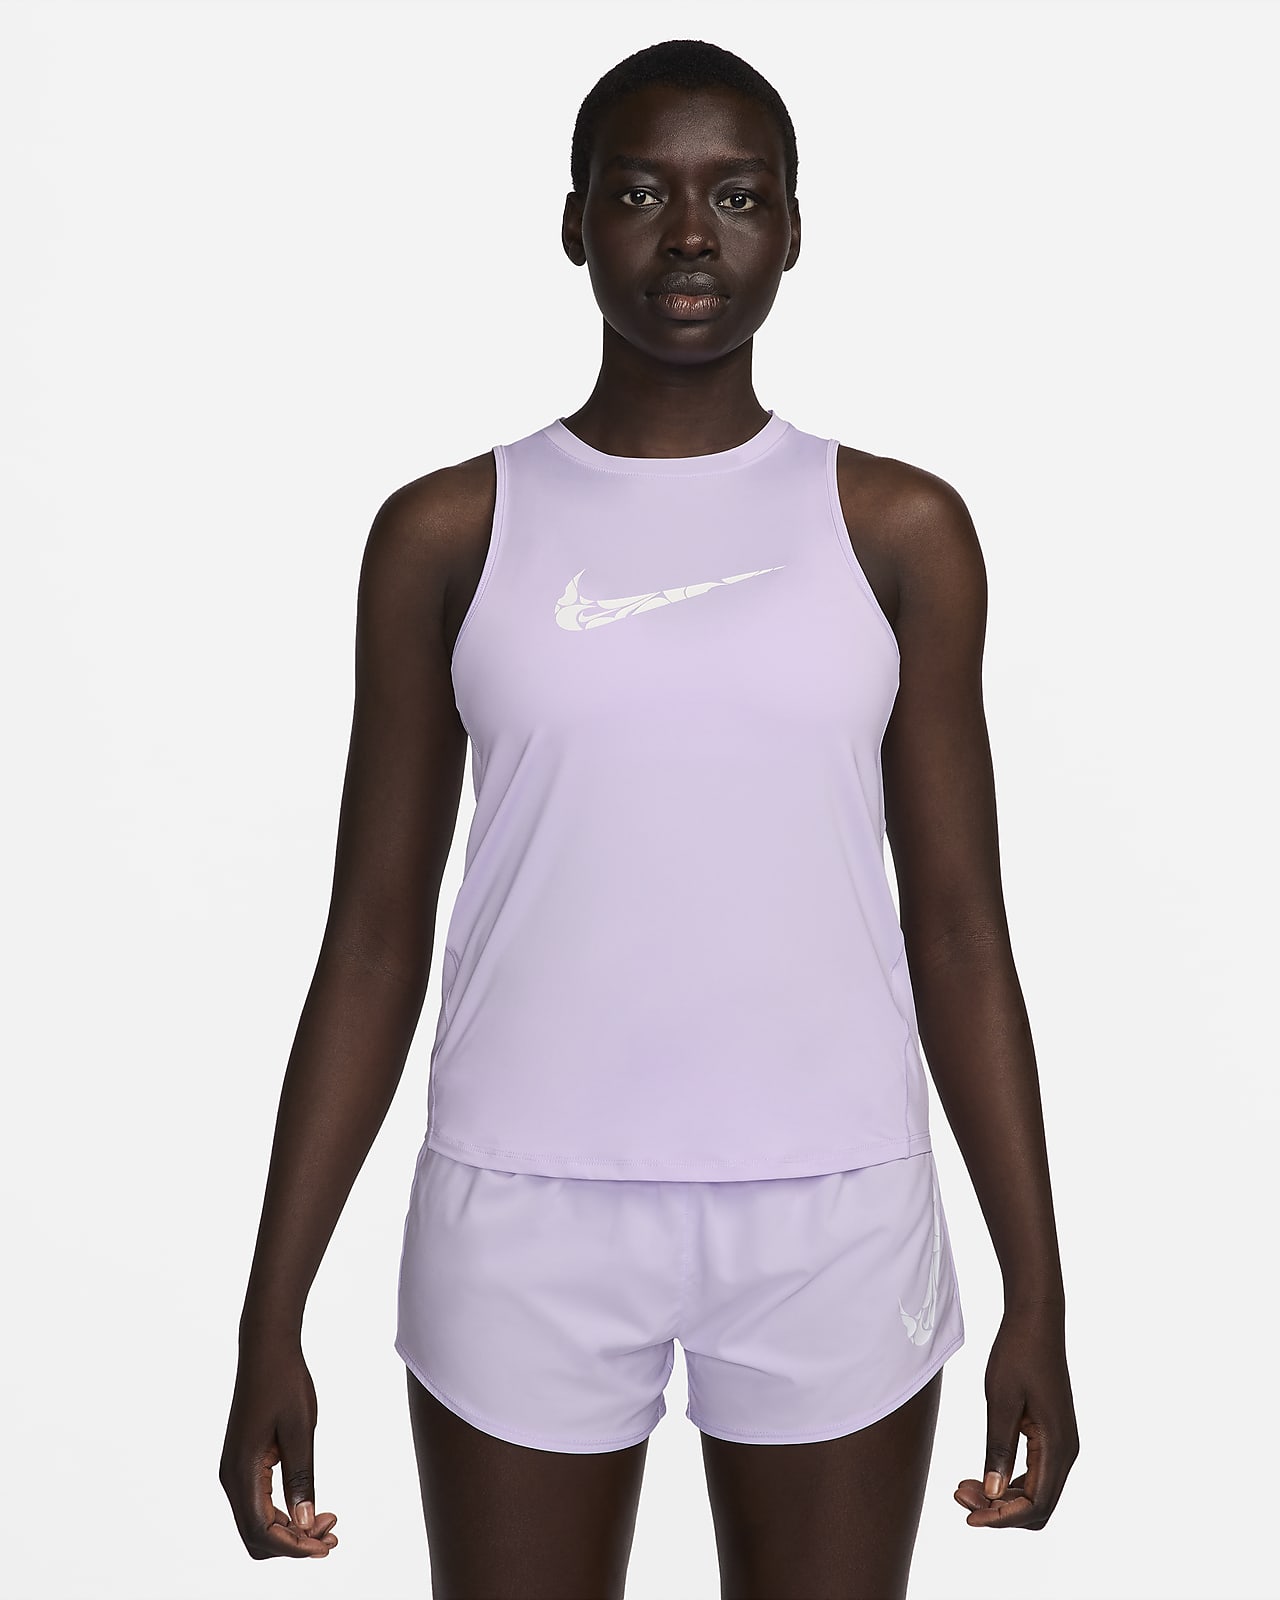 Löparlinne med tryck Nike One för kvinnor